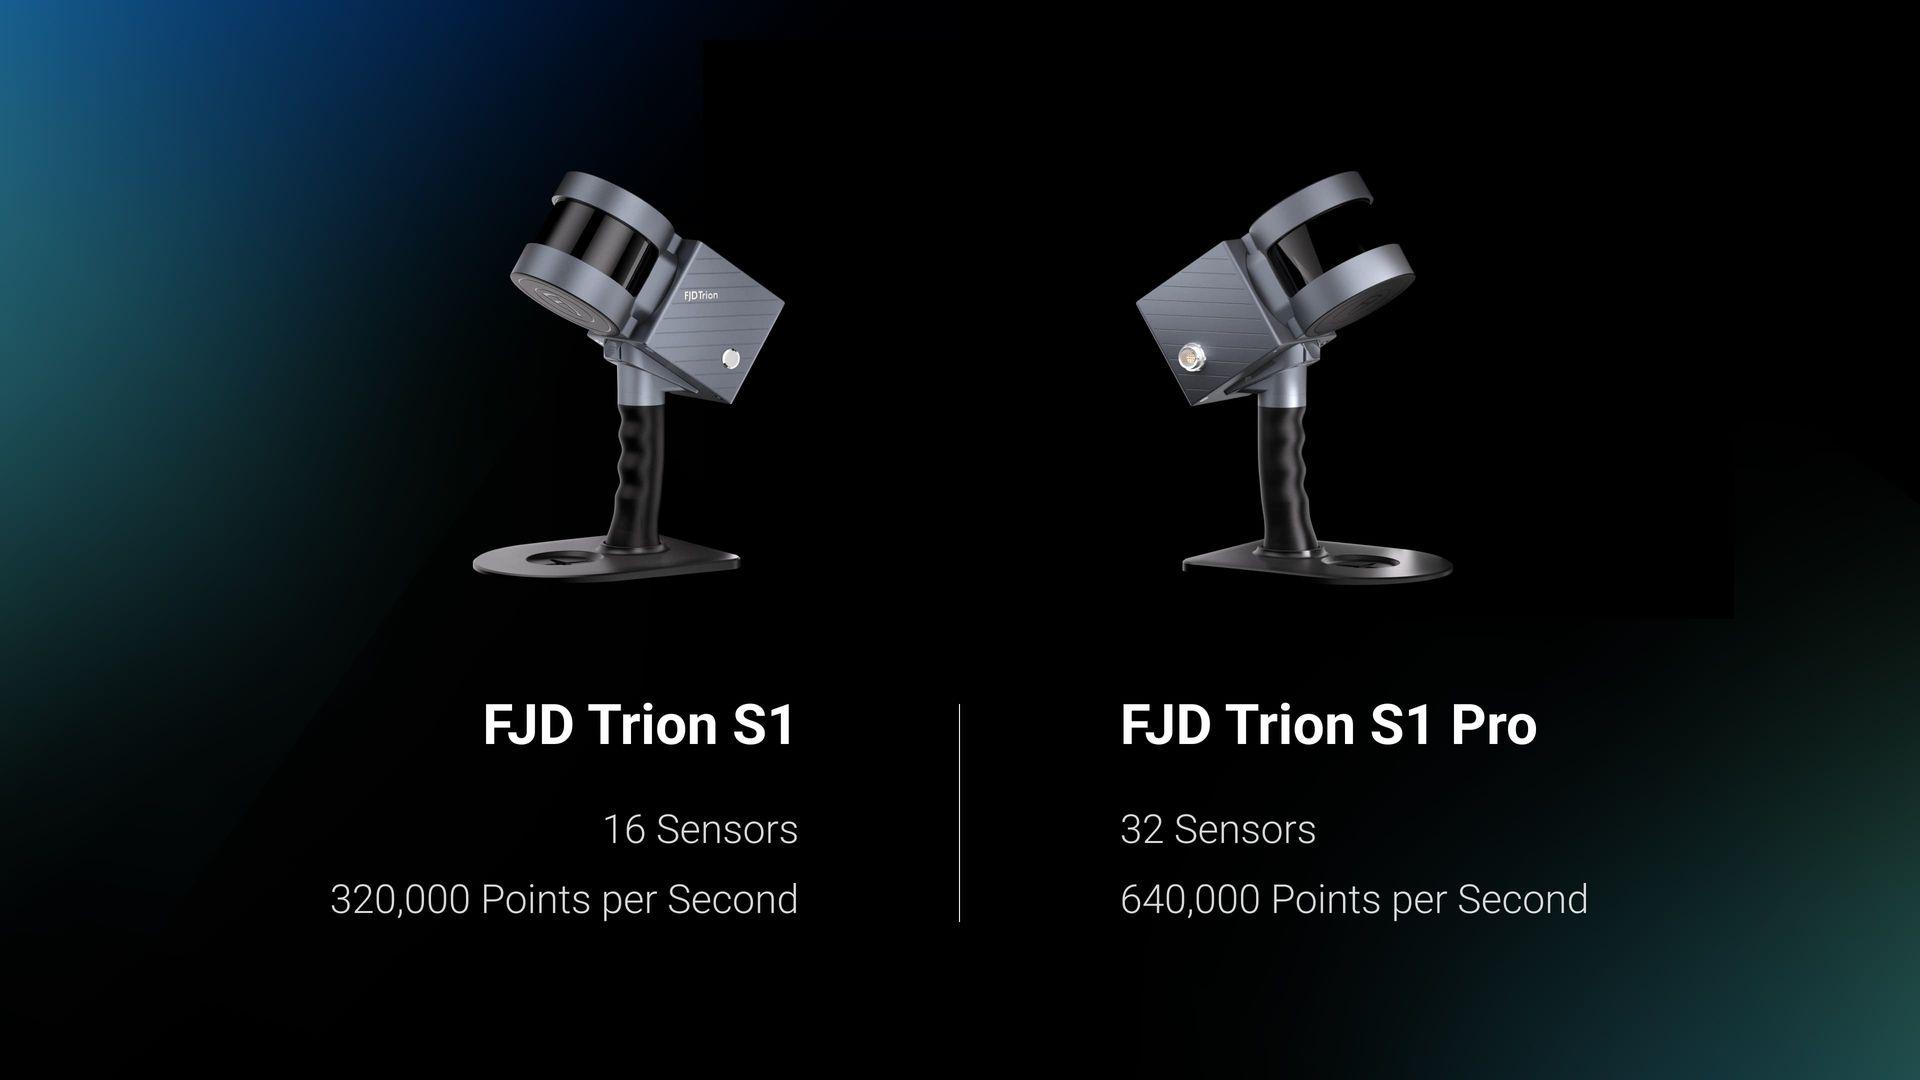 Öka dina skanningsmöjligheter med FJD Trion S1 Pro, en avancerad version av S1. Bygger på den lätta och bärbara designen hos S1, S1 Pro levererar ännu större noggrannhet och effektivitet med sin uppgraderade hårdvara.